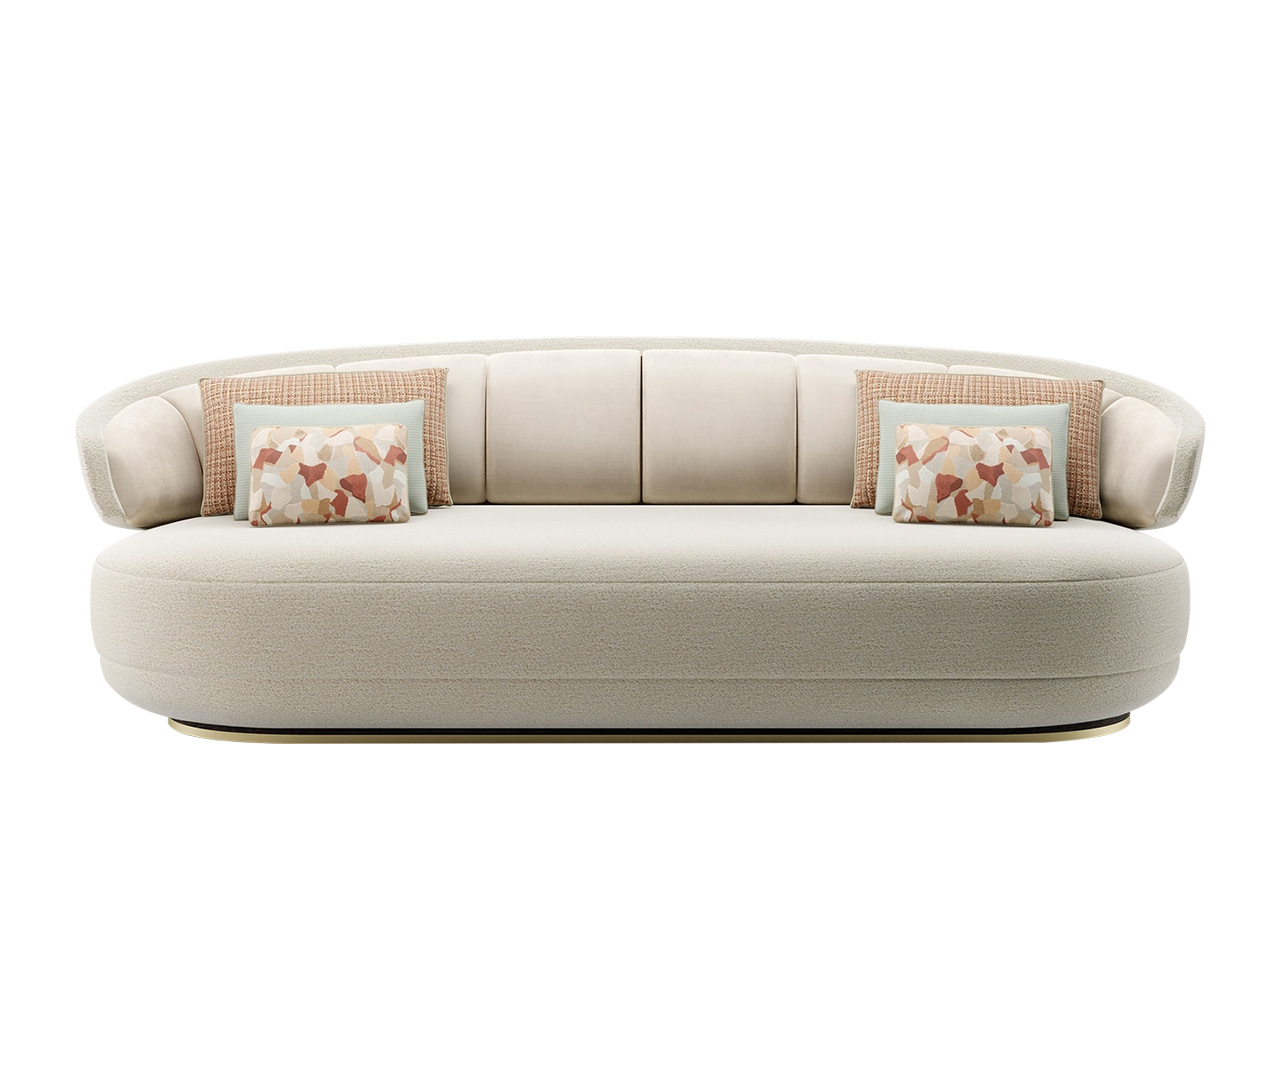 Round Upholster Sofa